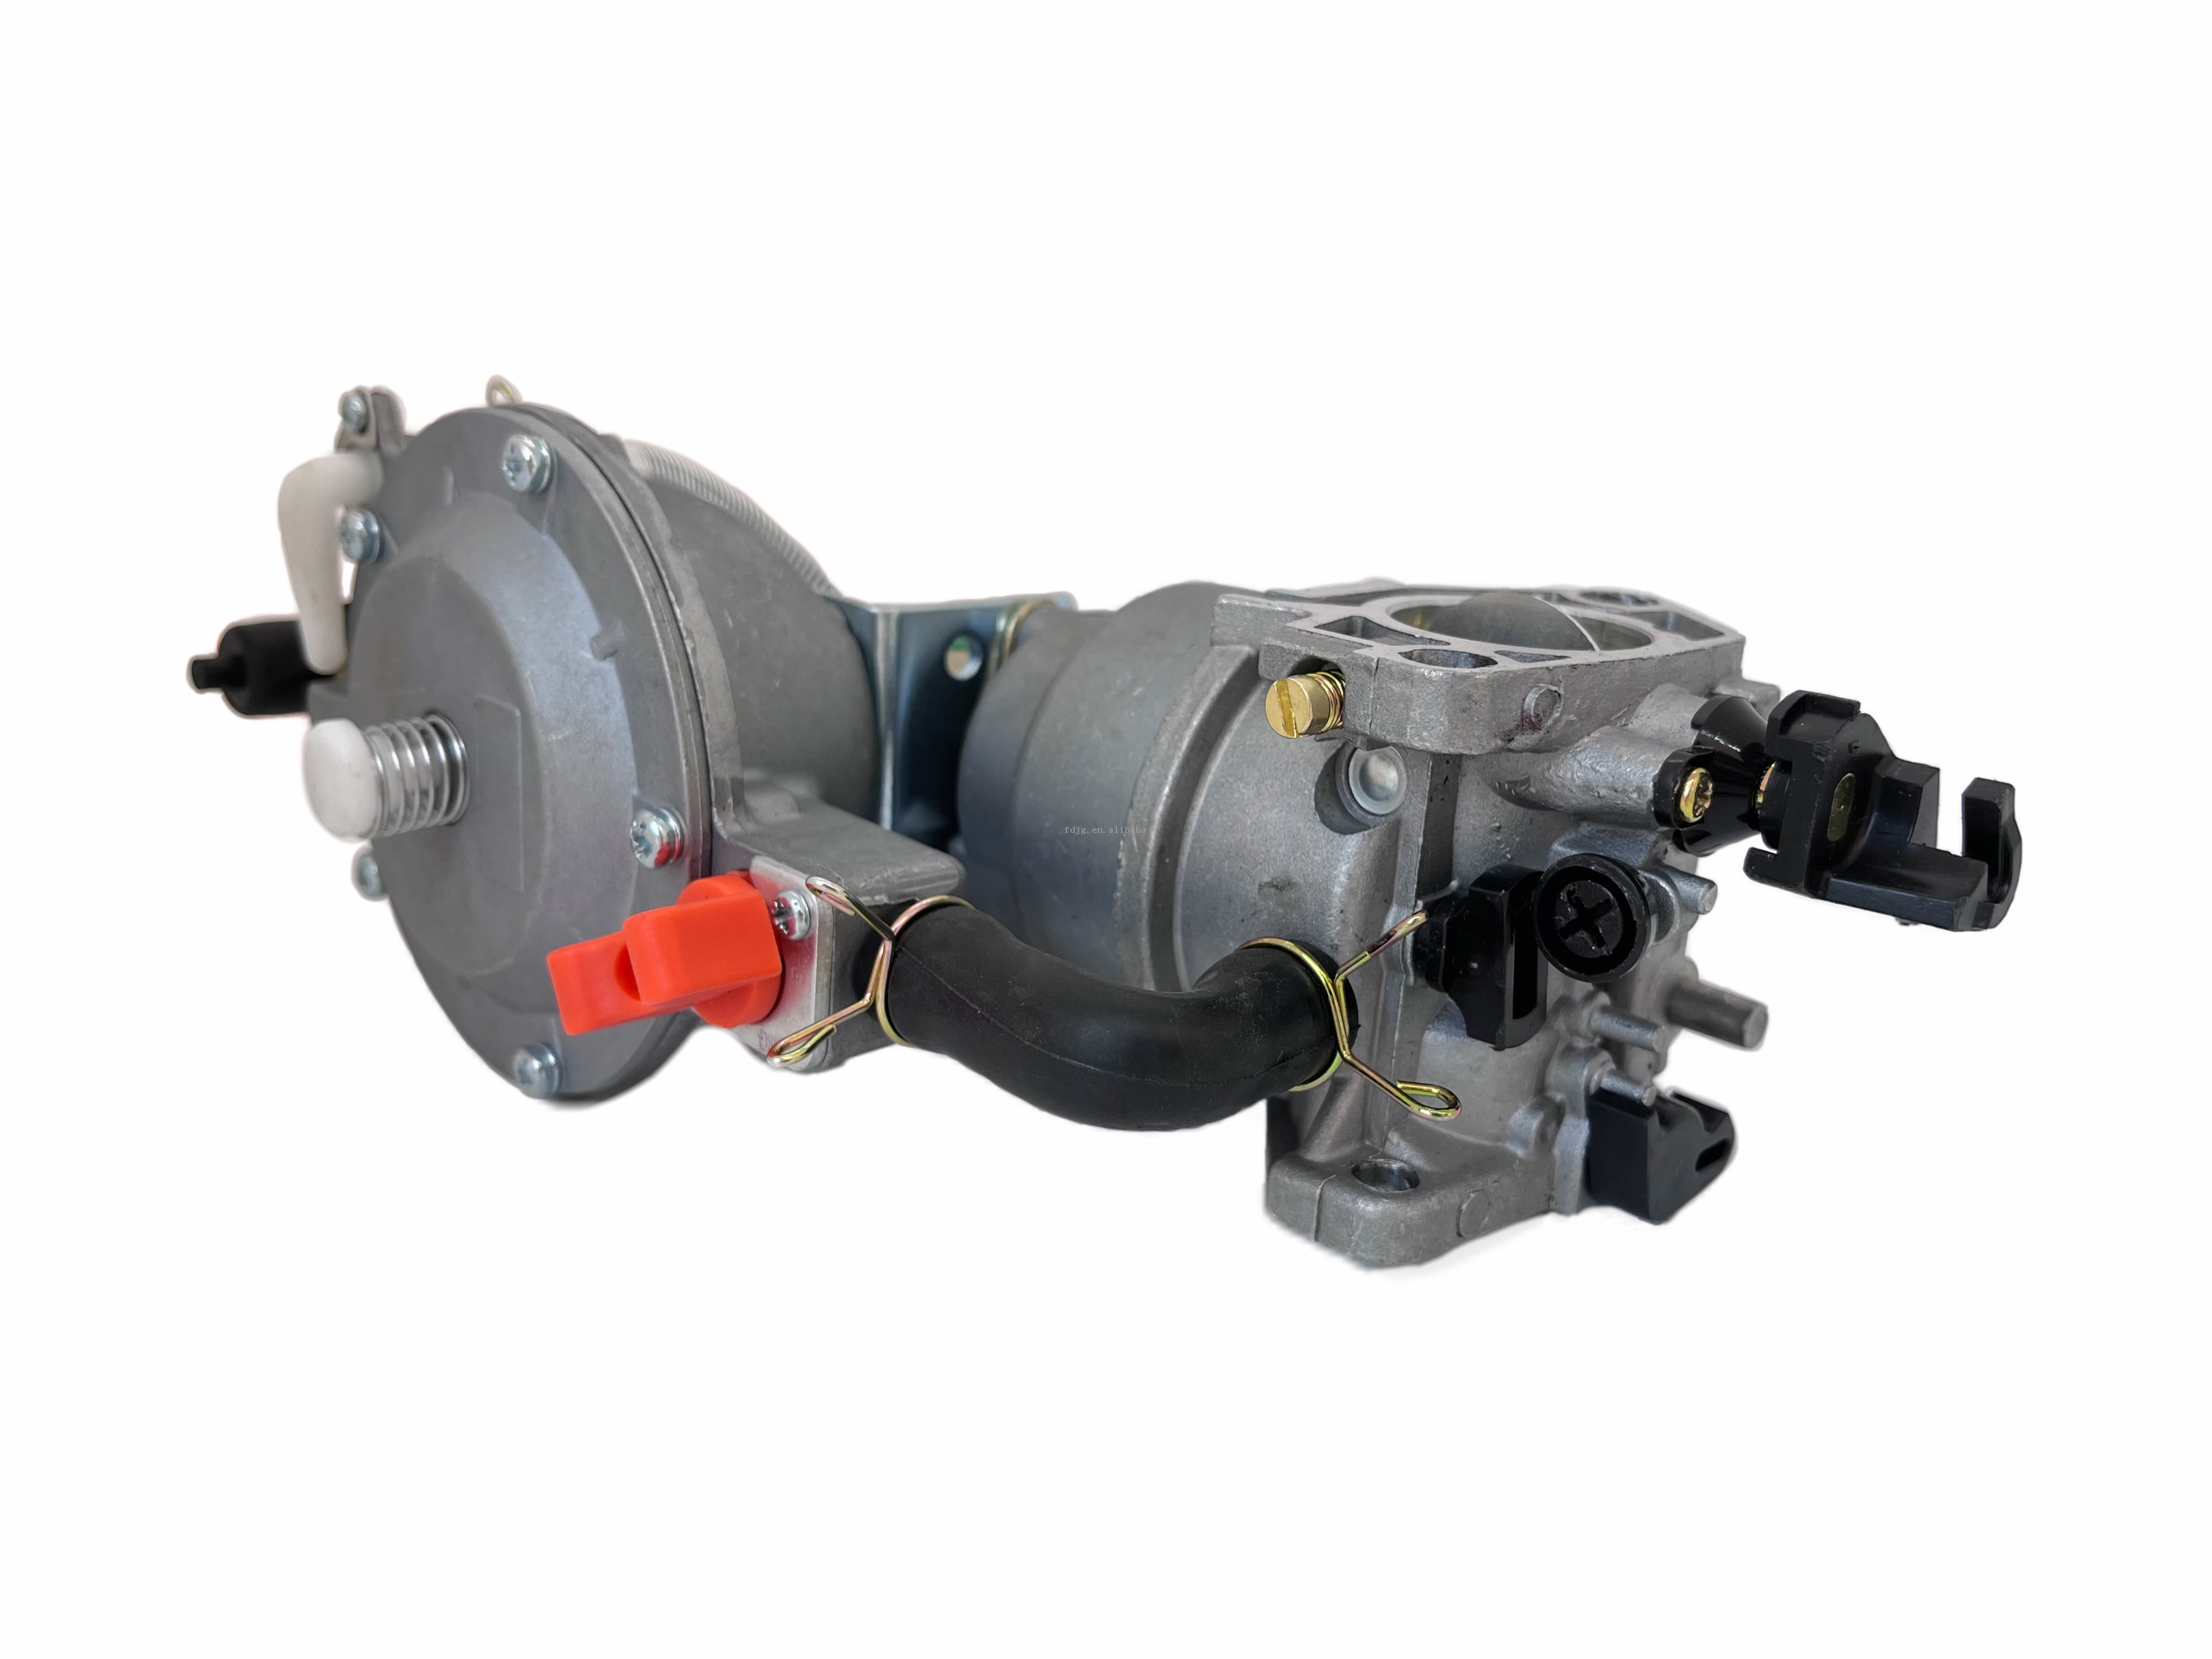  Kit de Conversion de carburateur à double carburant LPG NG 192 pour générateur GX460